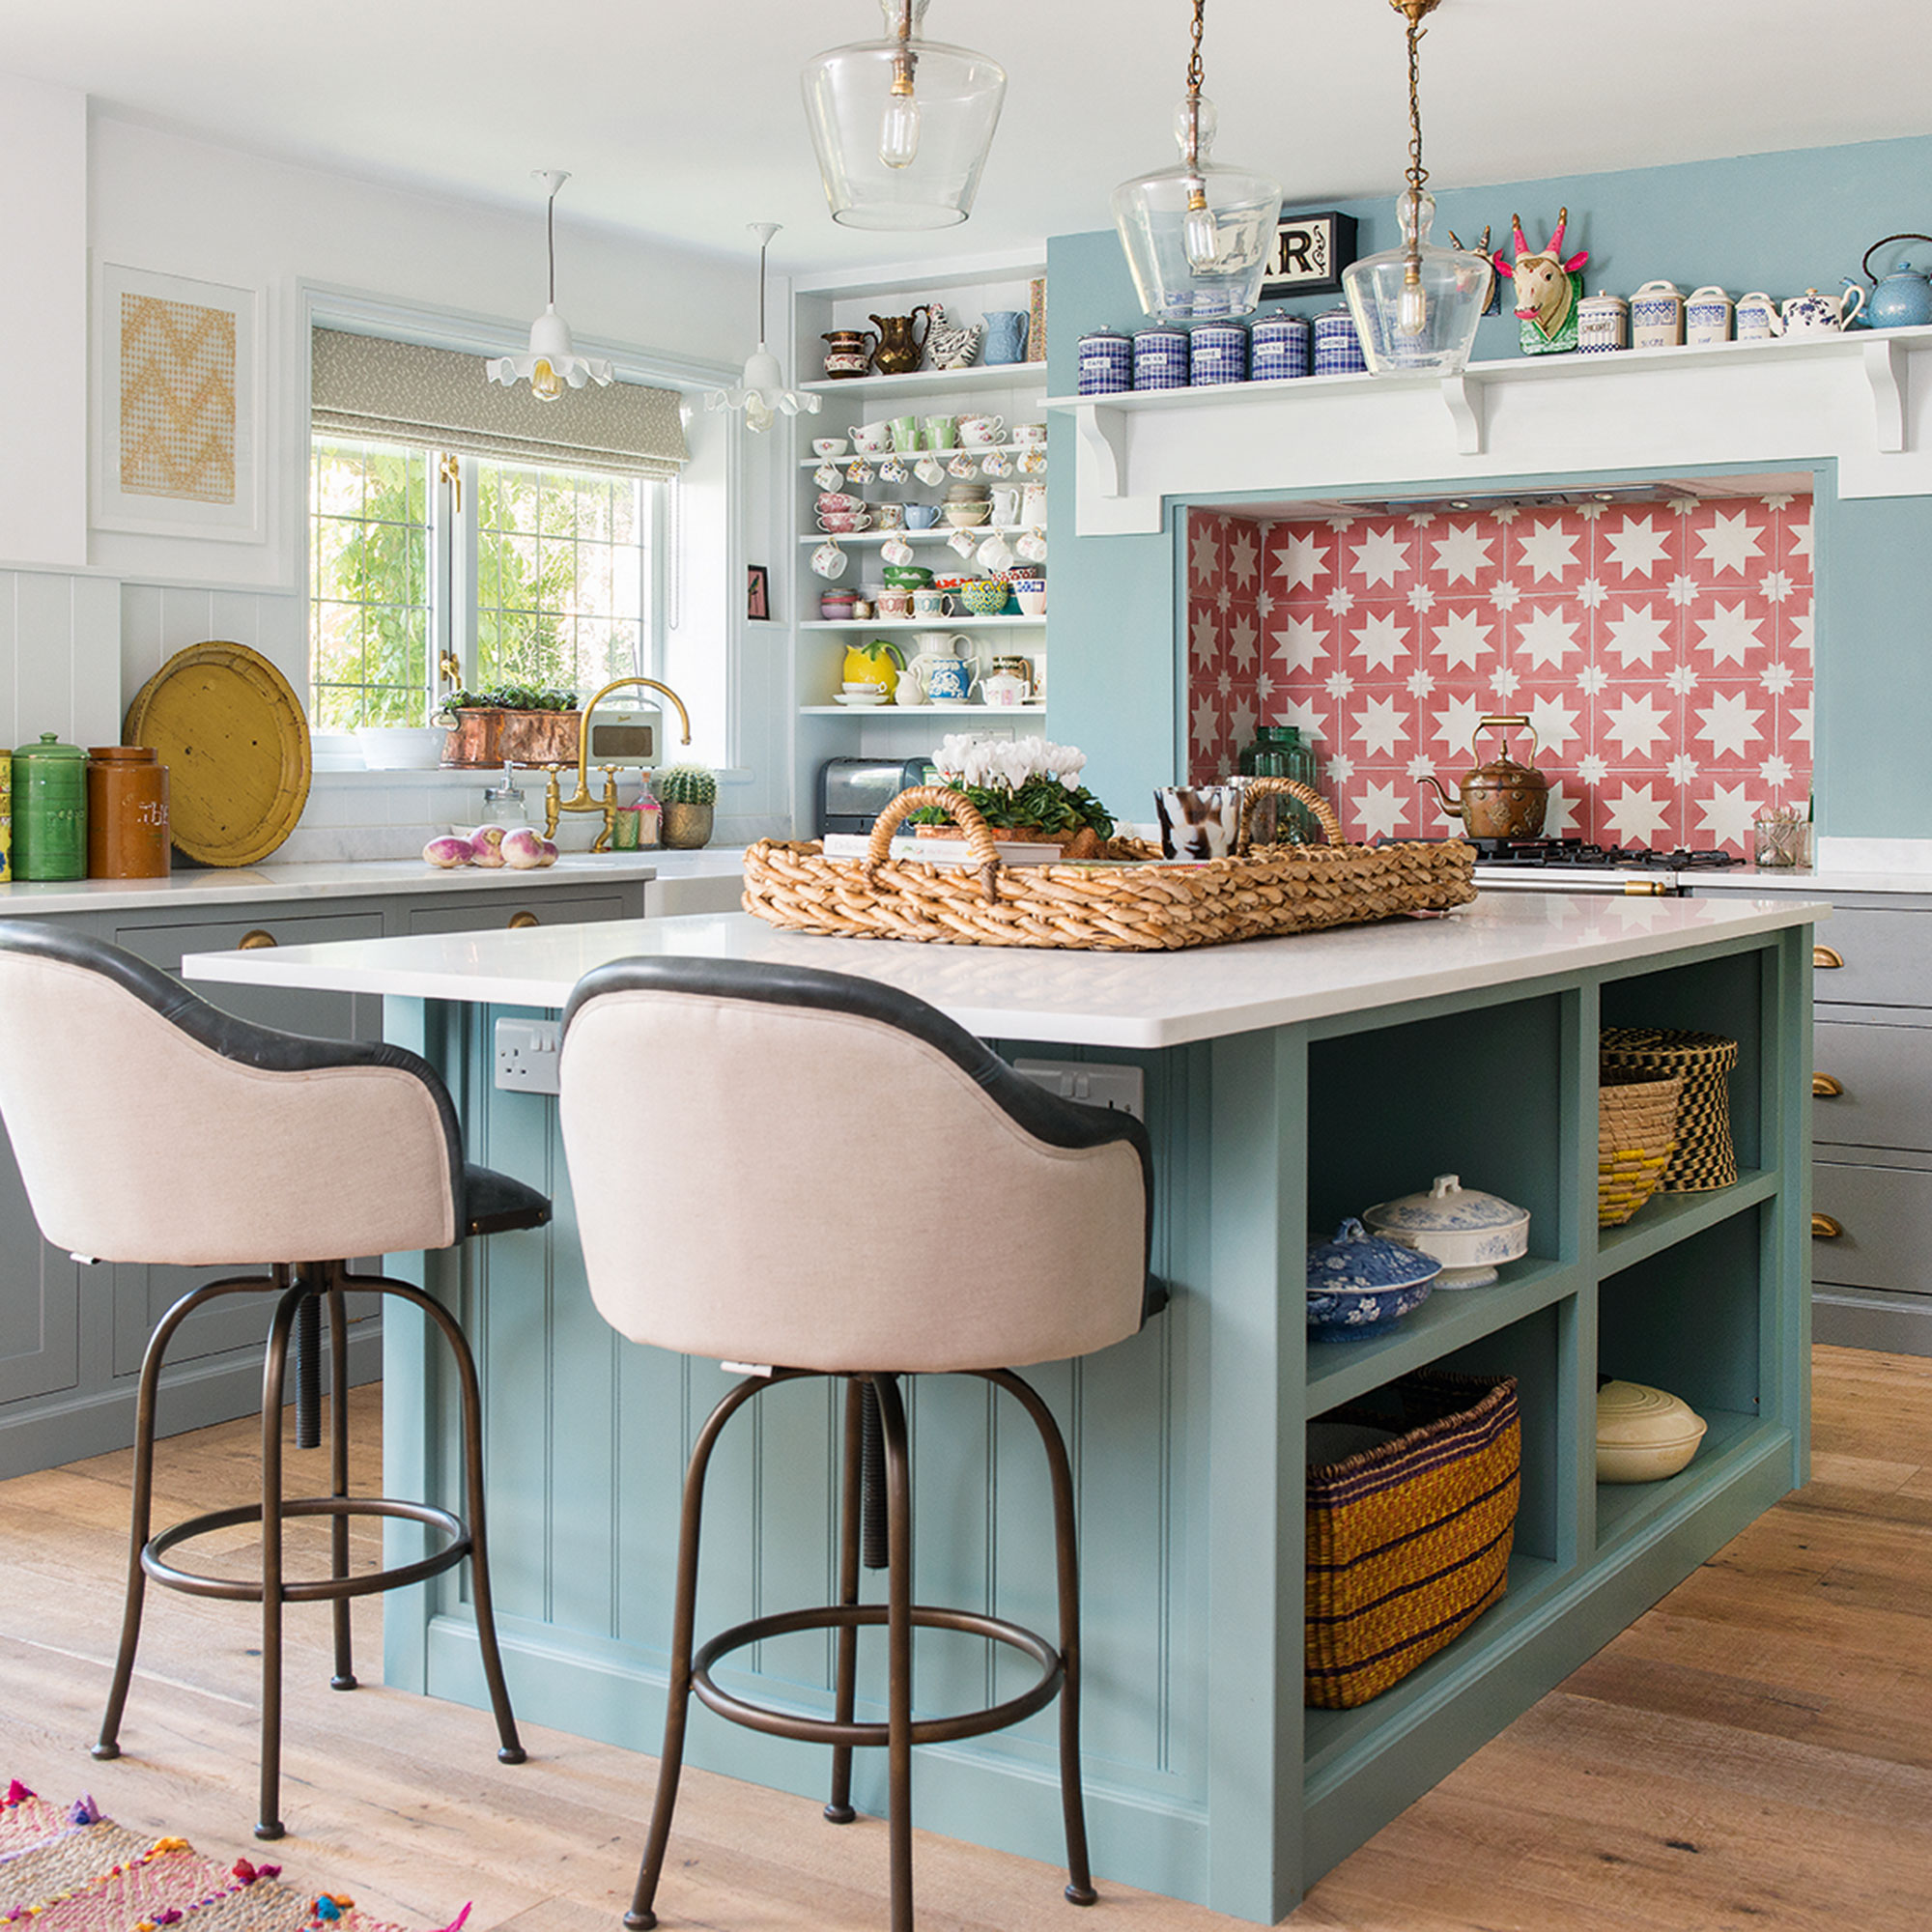 Cocina azul claro con isla, asientos de barra y salpicadero de azulejos estampados en rosa